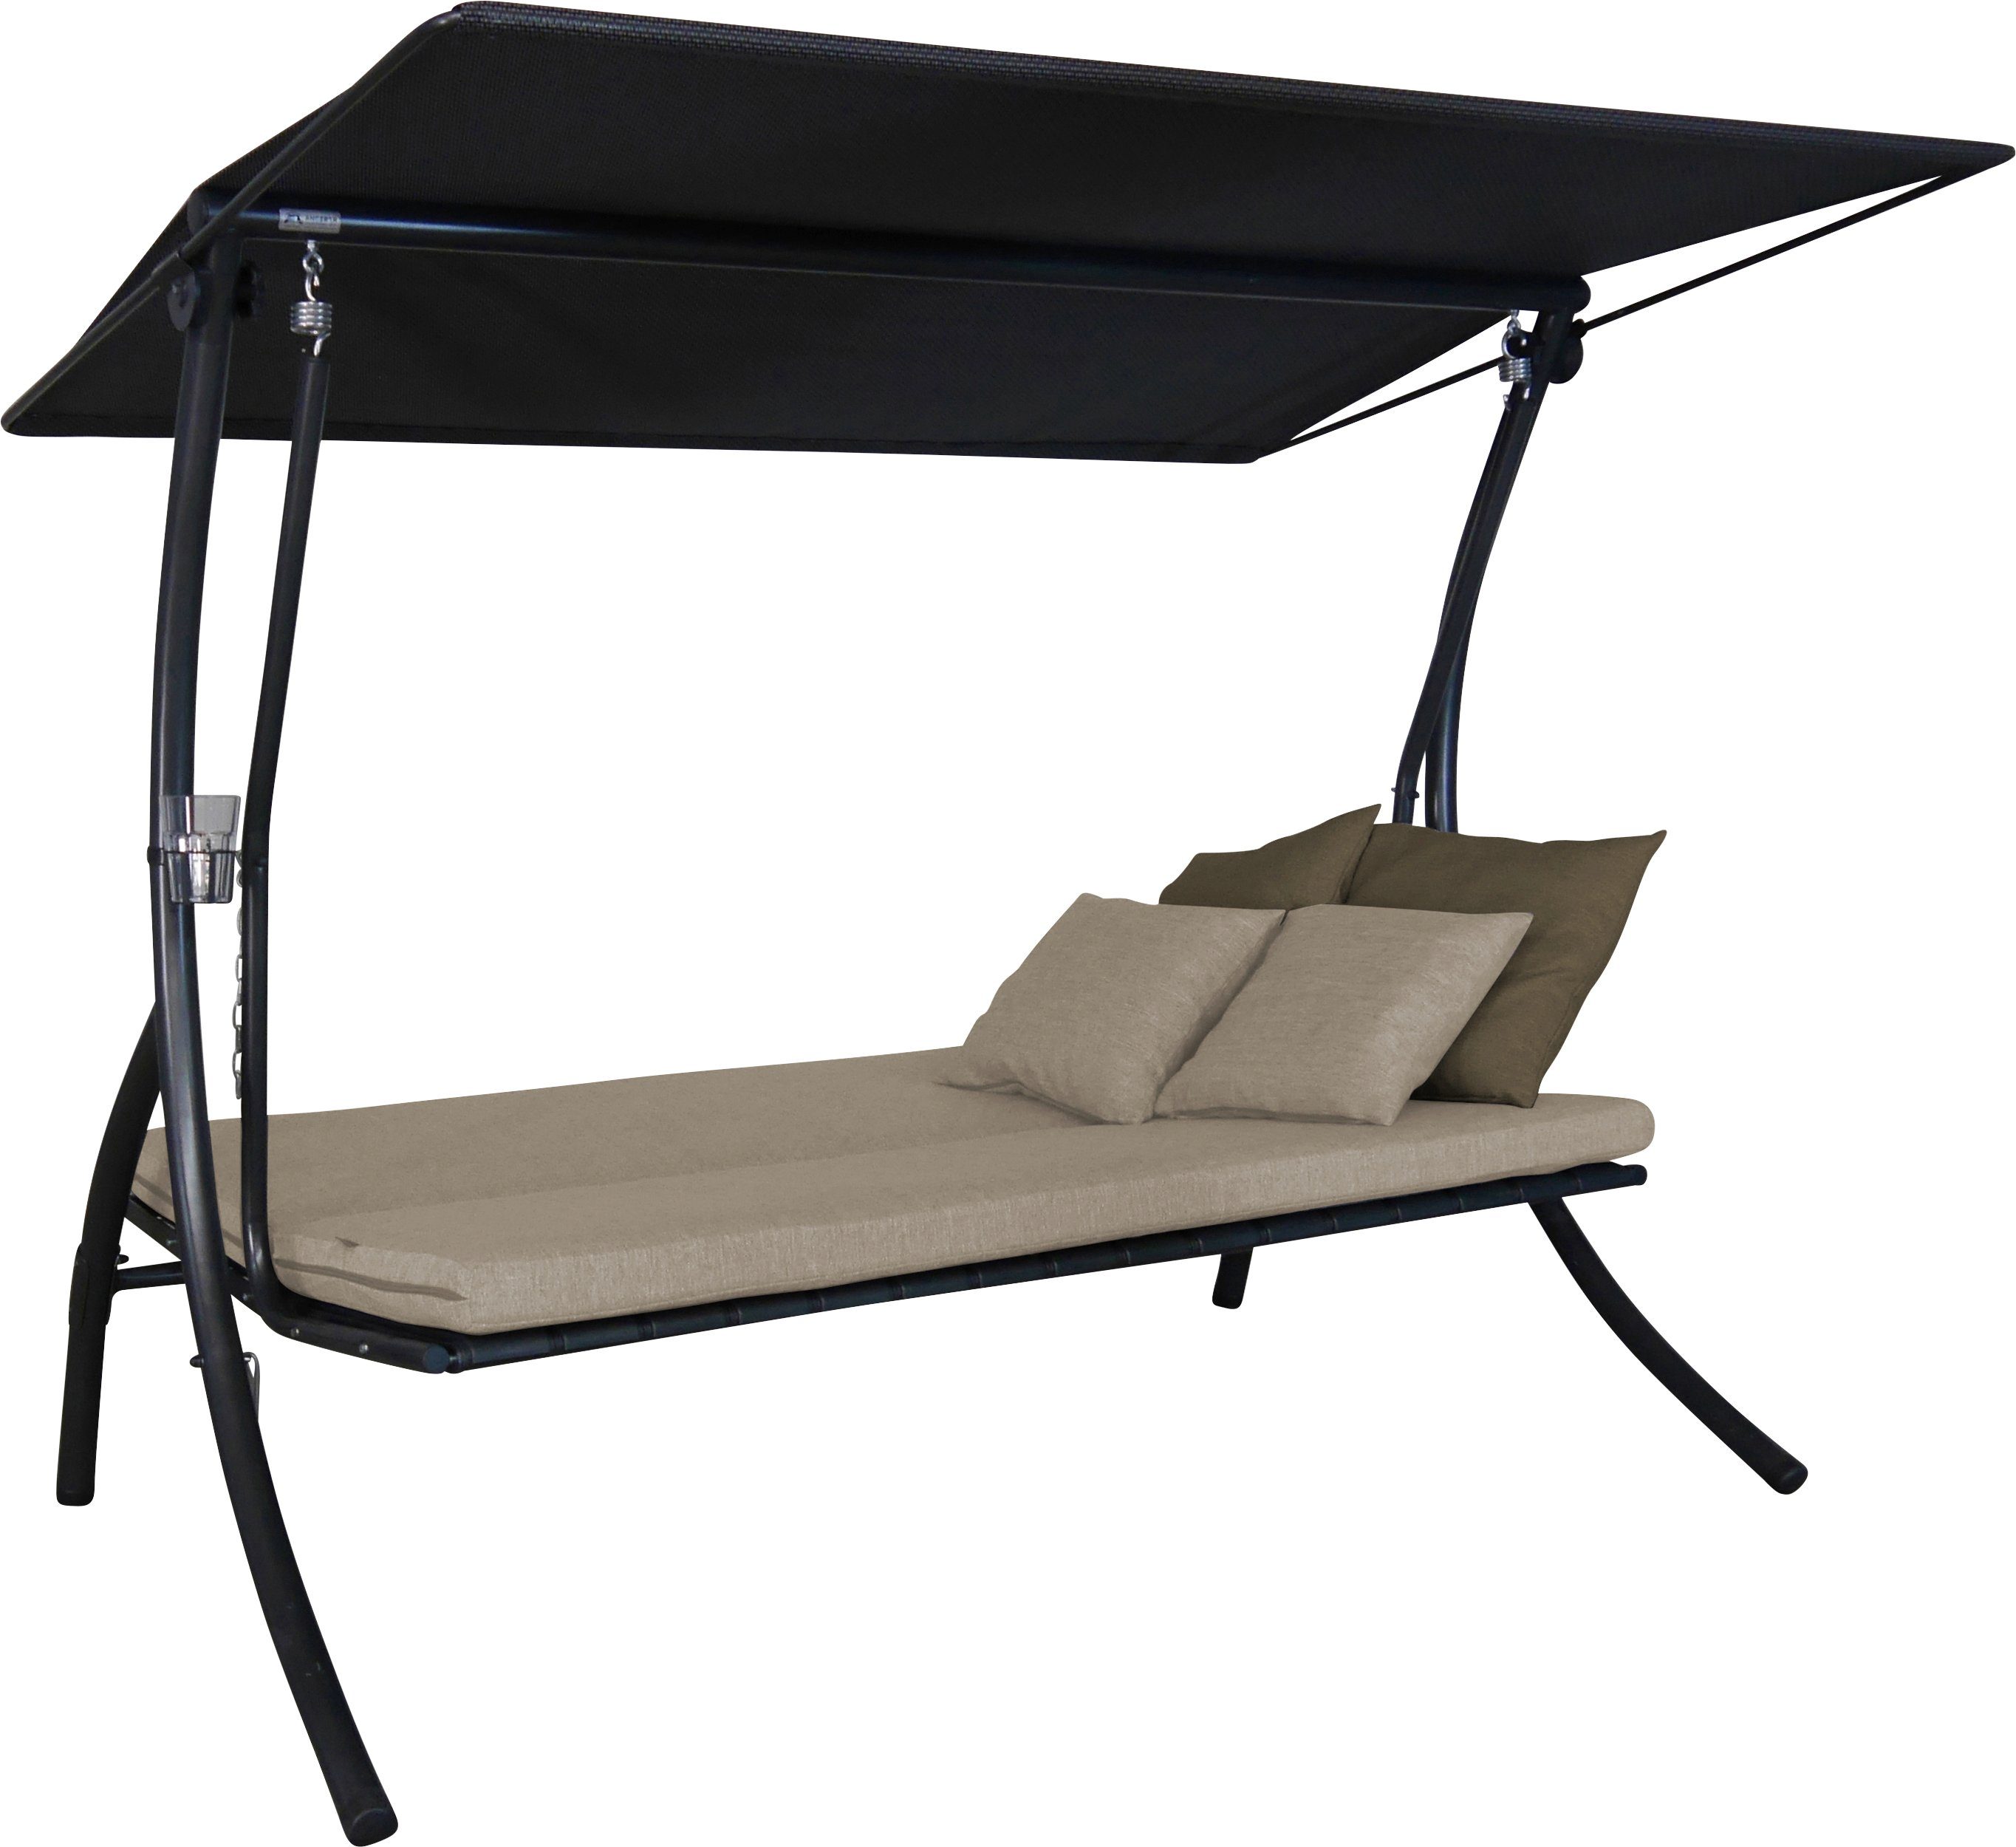 [Am beliebtesten] Angerer Freizeitmöbel Motion Smart Bettfunktion 3-Sitzer, Hollywoodschaukel sand